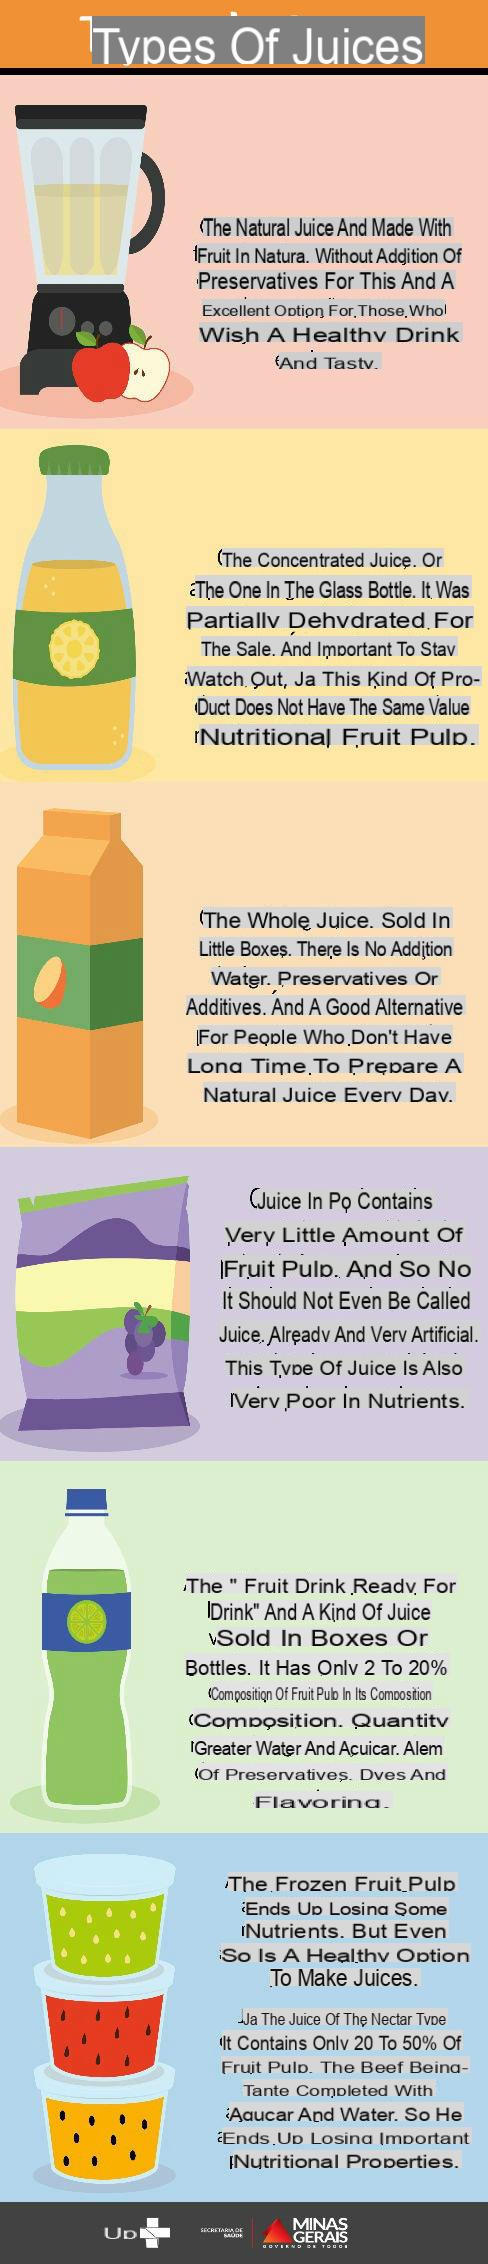 Types de jus de fruits : avantages et inconvénients